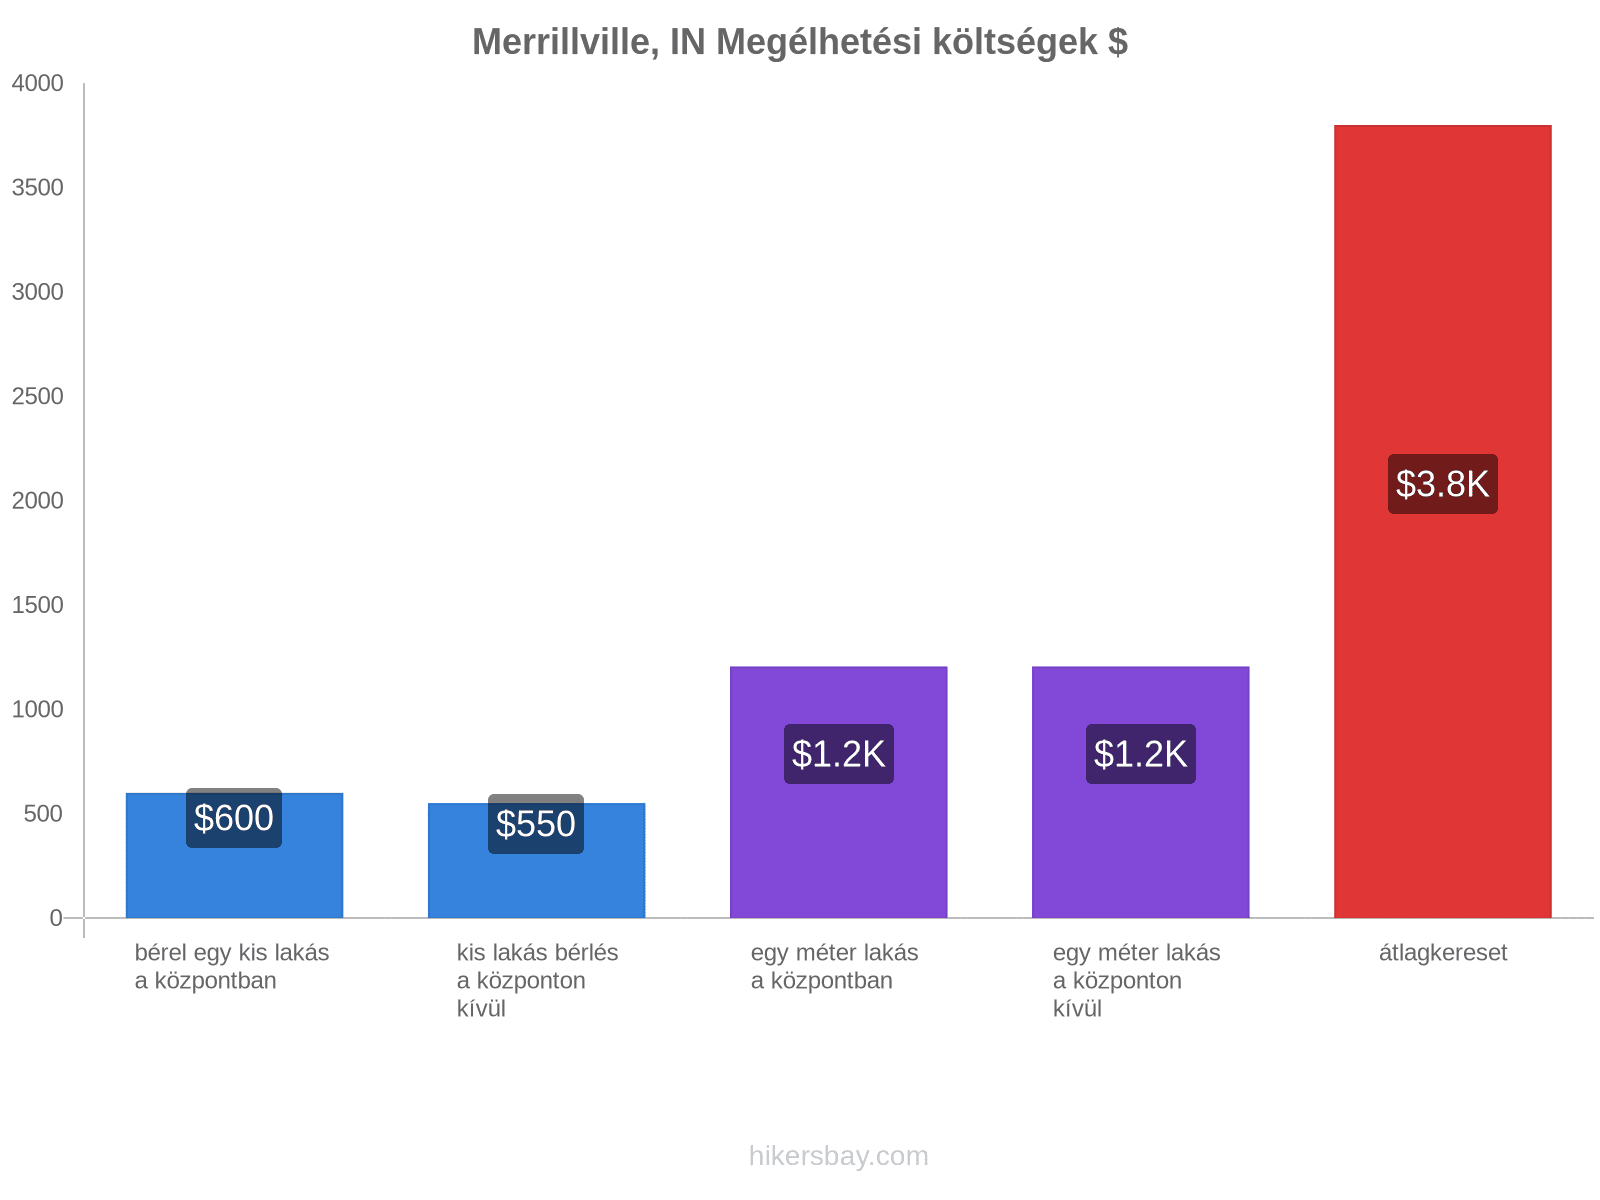 Merrillville, IN megélhetési költségek hikersbay.com